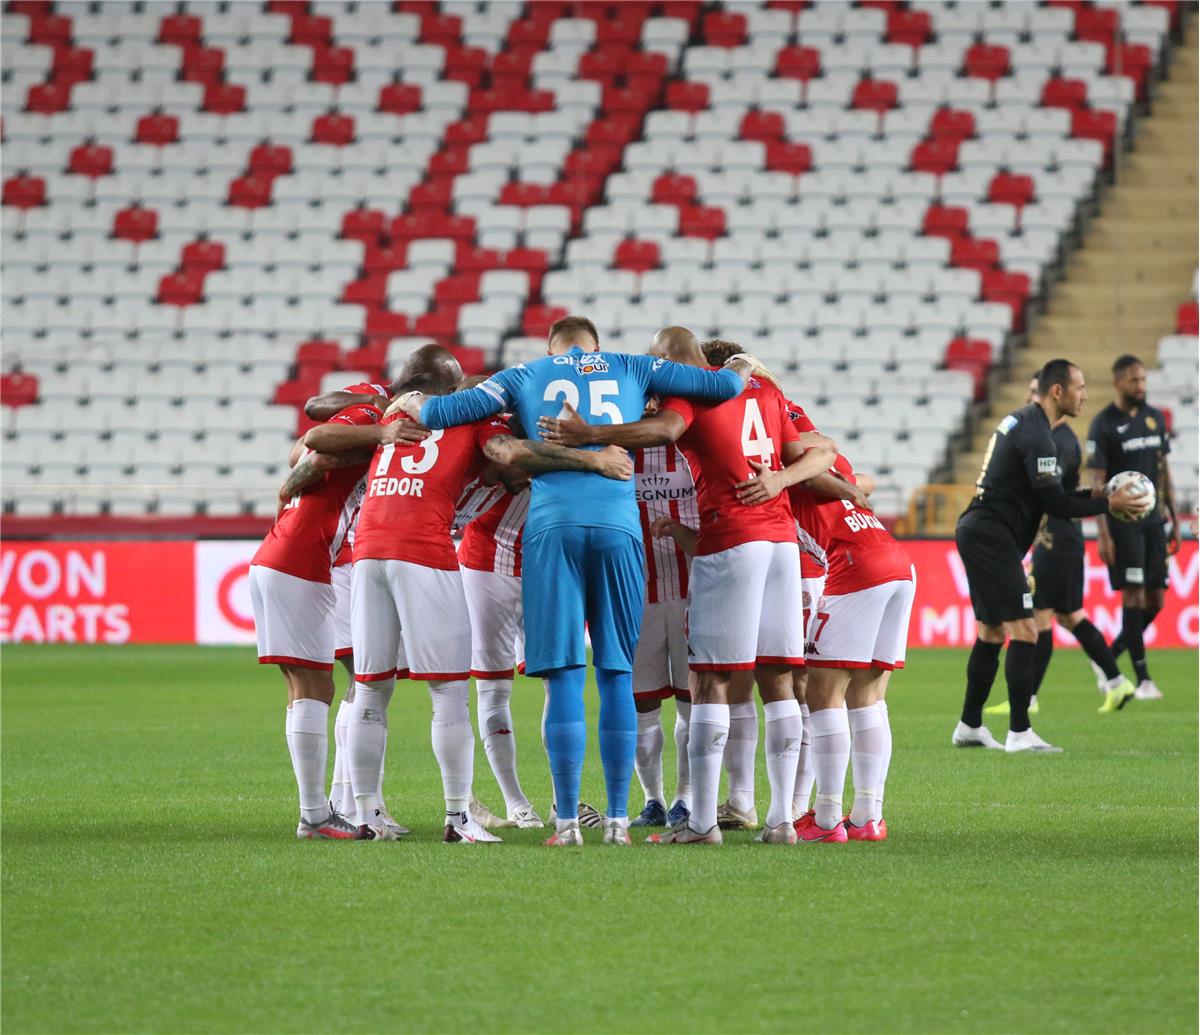 Fraport TAV Antalyaspor 1-1 Yeni Malatyaspor